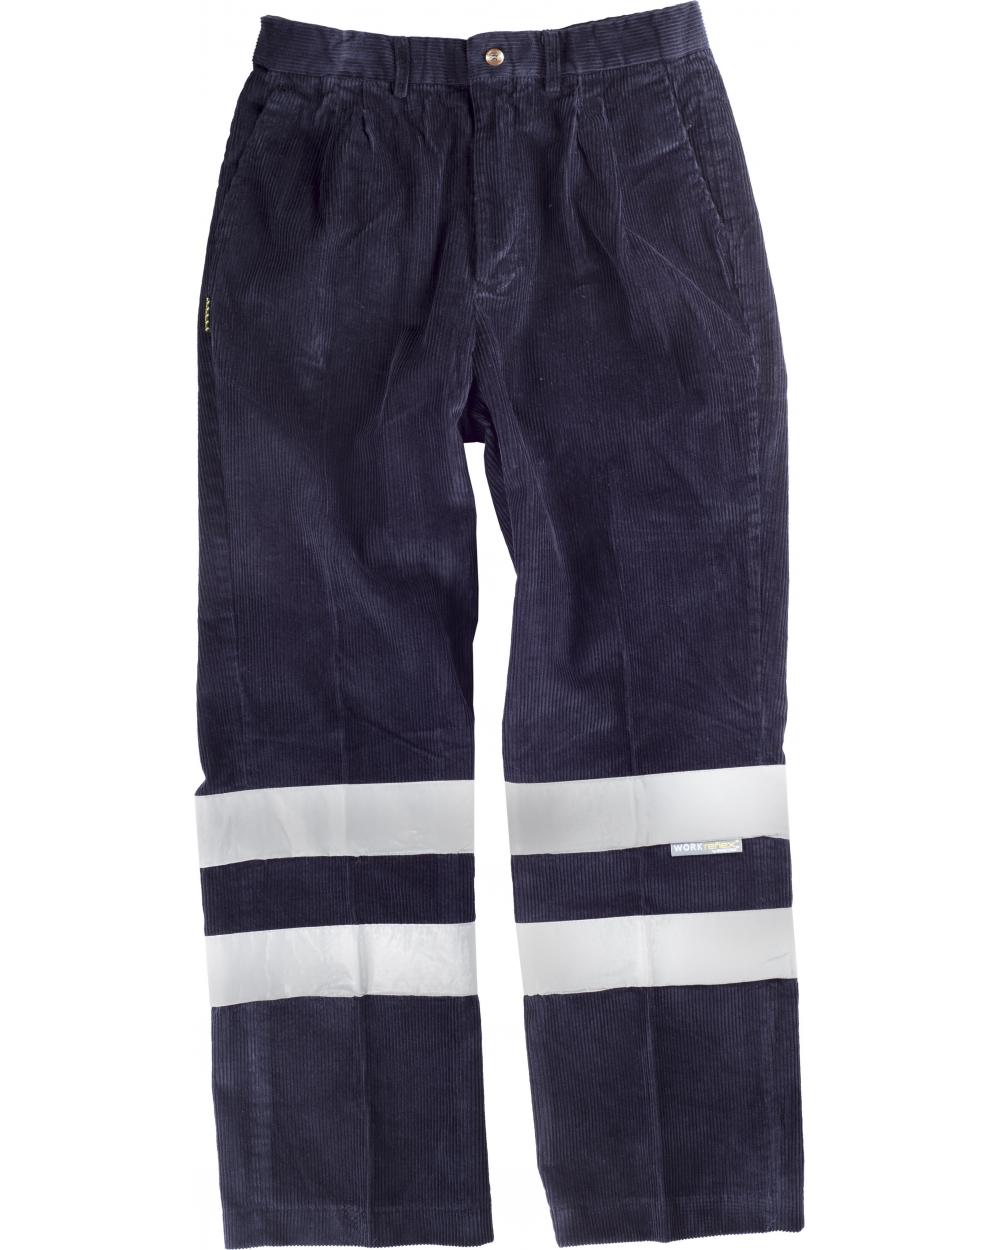 Comprar Pantalon pana con cintas reflectantes S7016 Marino workteam delante